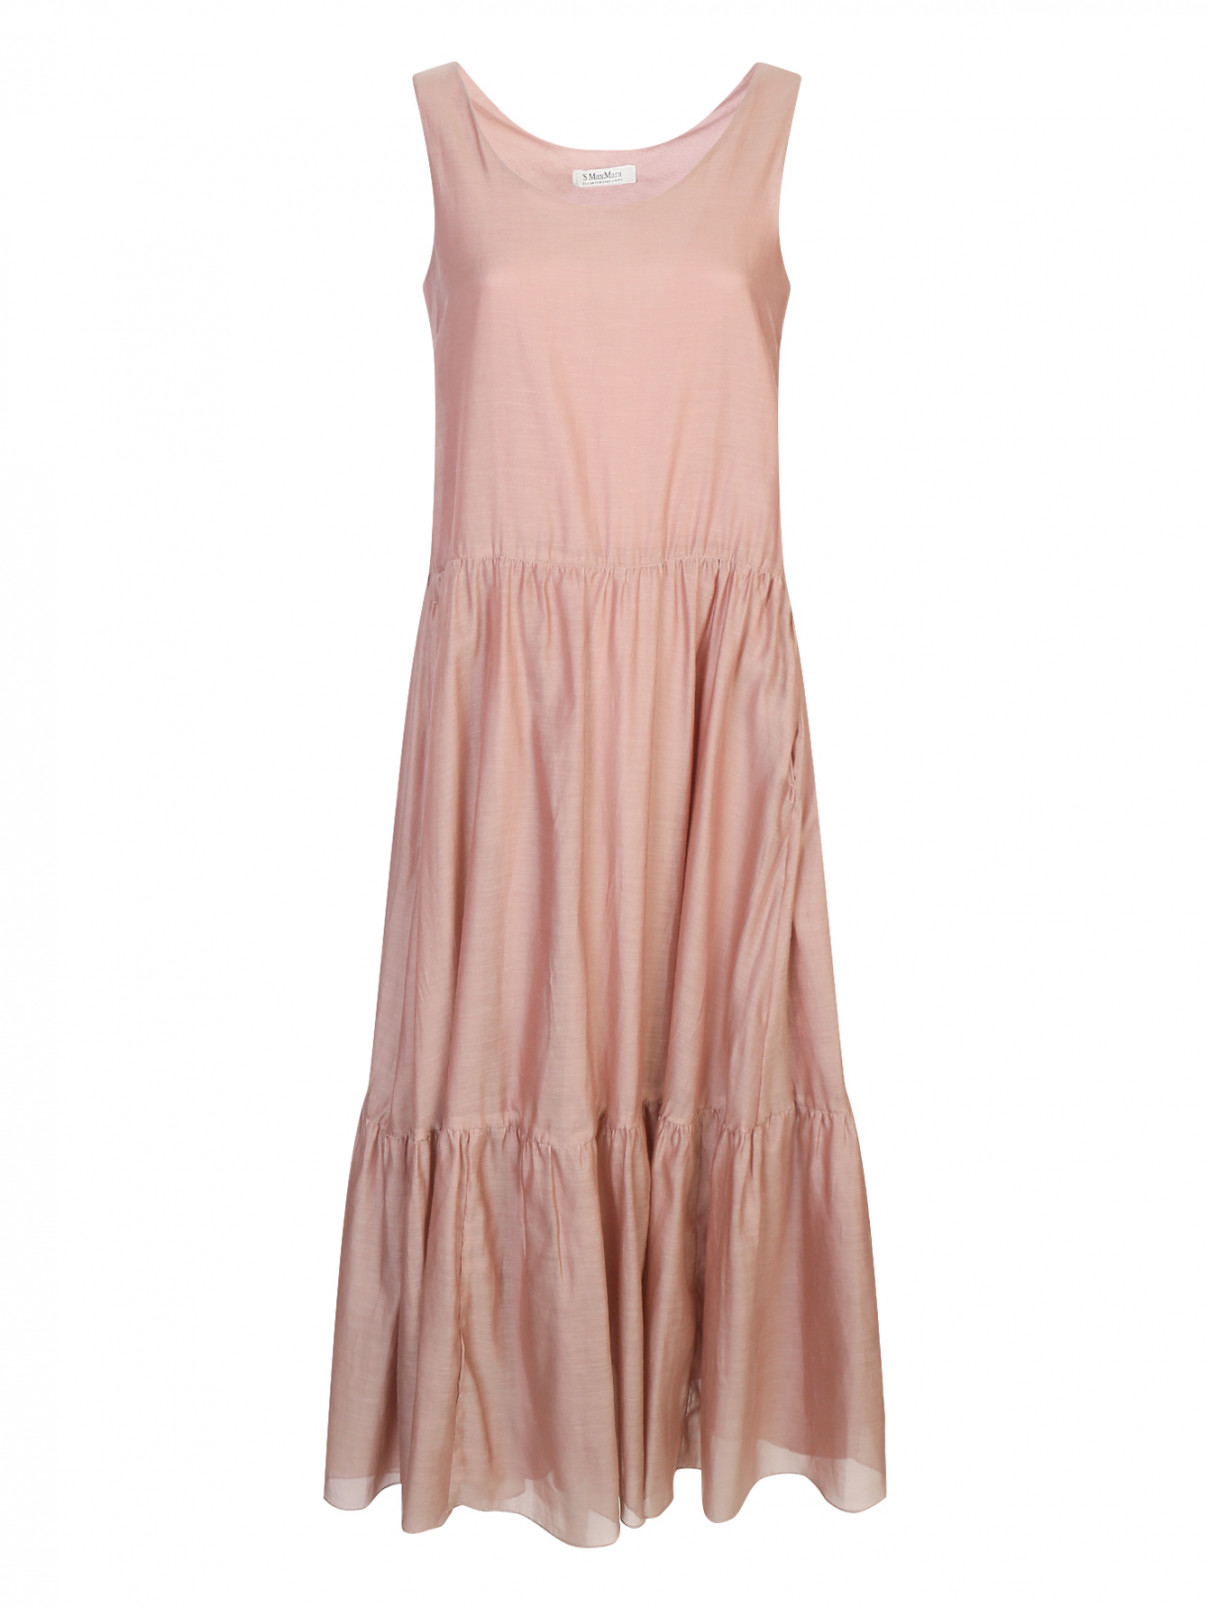 Платье из хлопка и шелка Max Mara  –  Общий вид  – Цвет:  Розовый